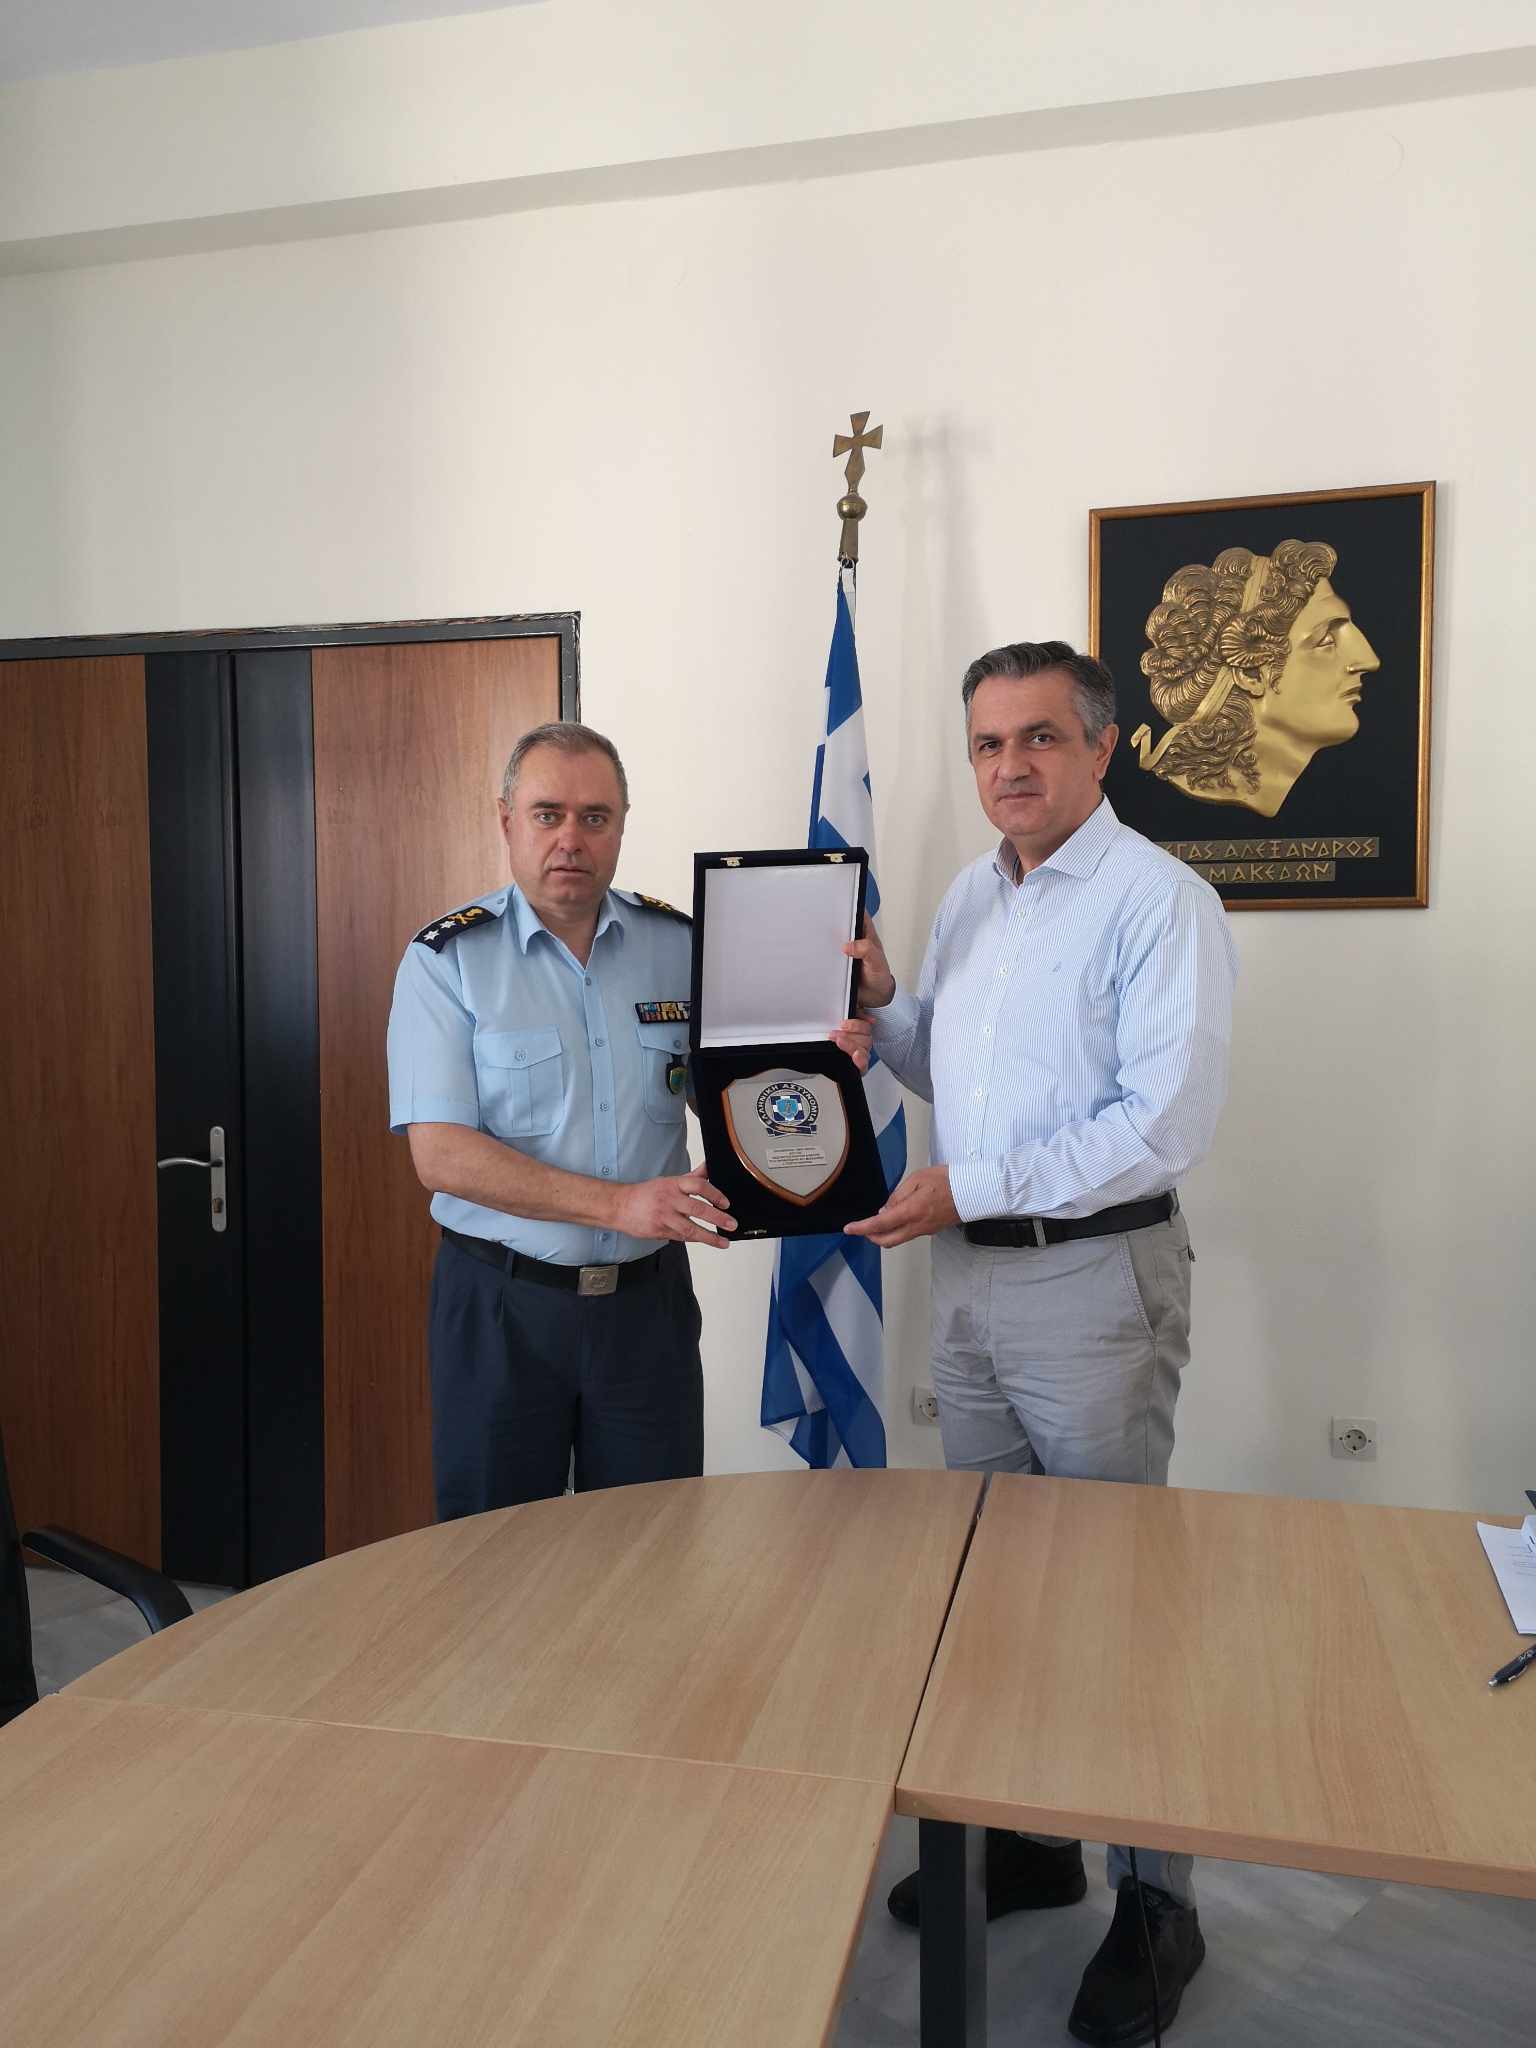 Με τον Υποστράτηγο της ΕΛ.ΑΣ. Δημήτριο Παντελή συναντήθηκε ο Περιφερειάρχης Δ. Μακεδονίας Γεώργιος Κασαπίδης -1-